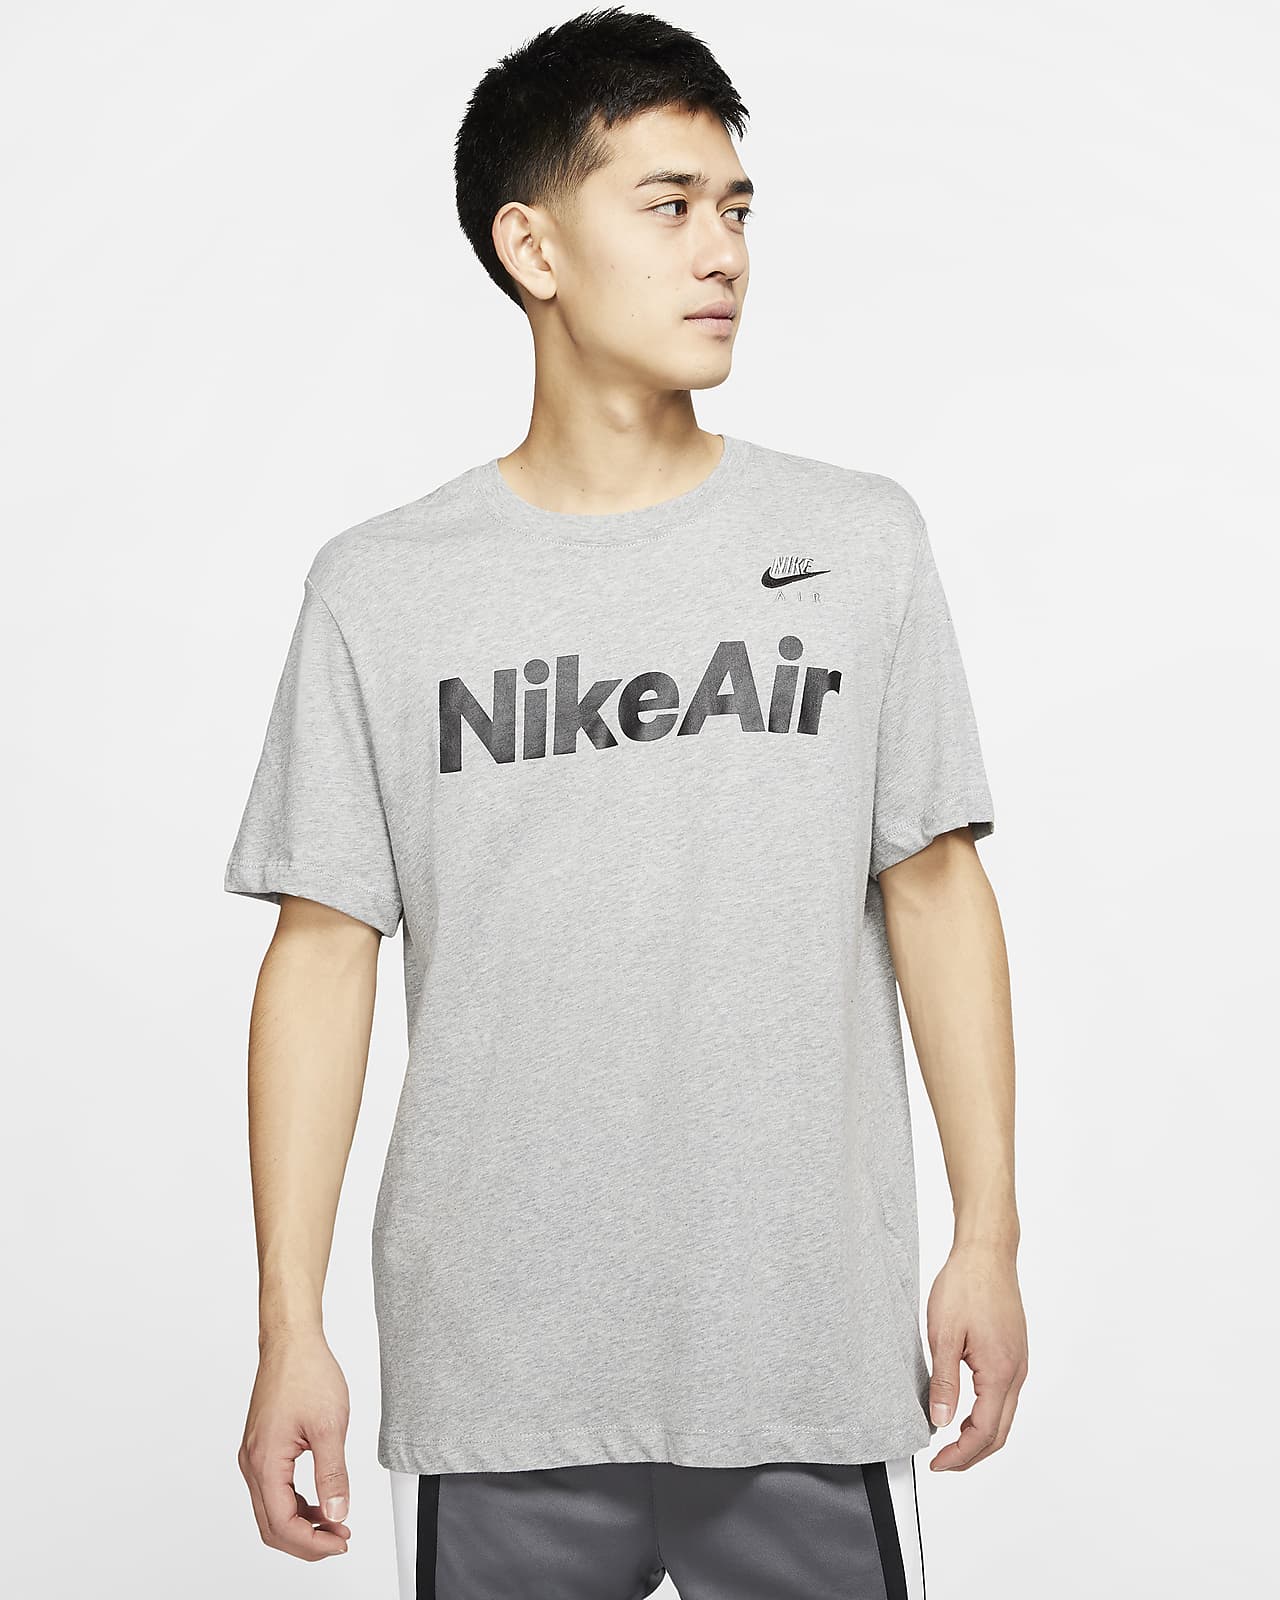 Tee-shirt Nike Air pour Homme